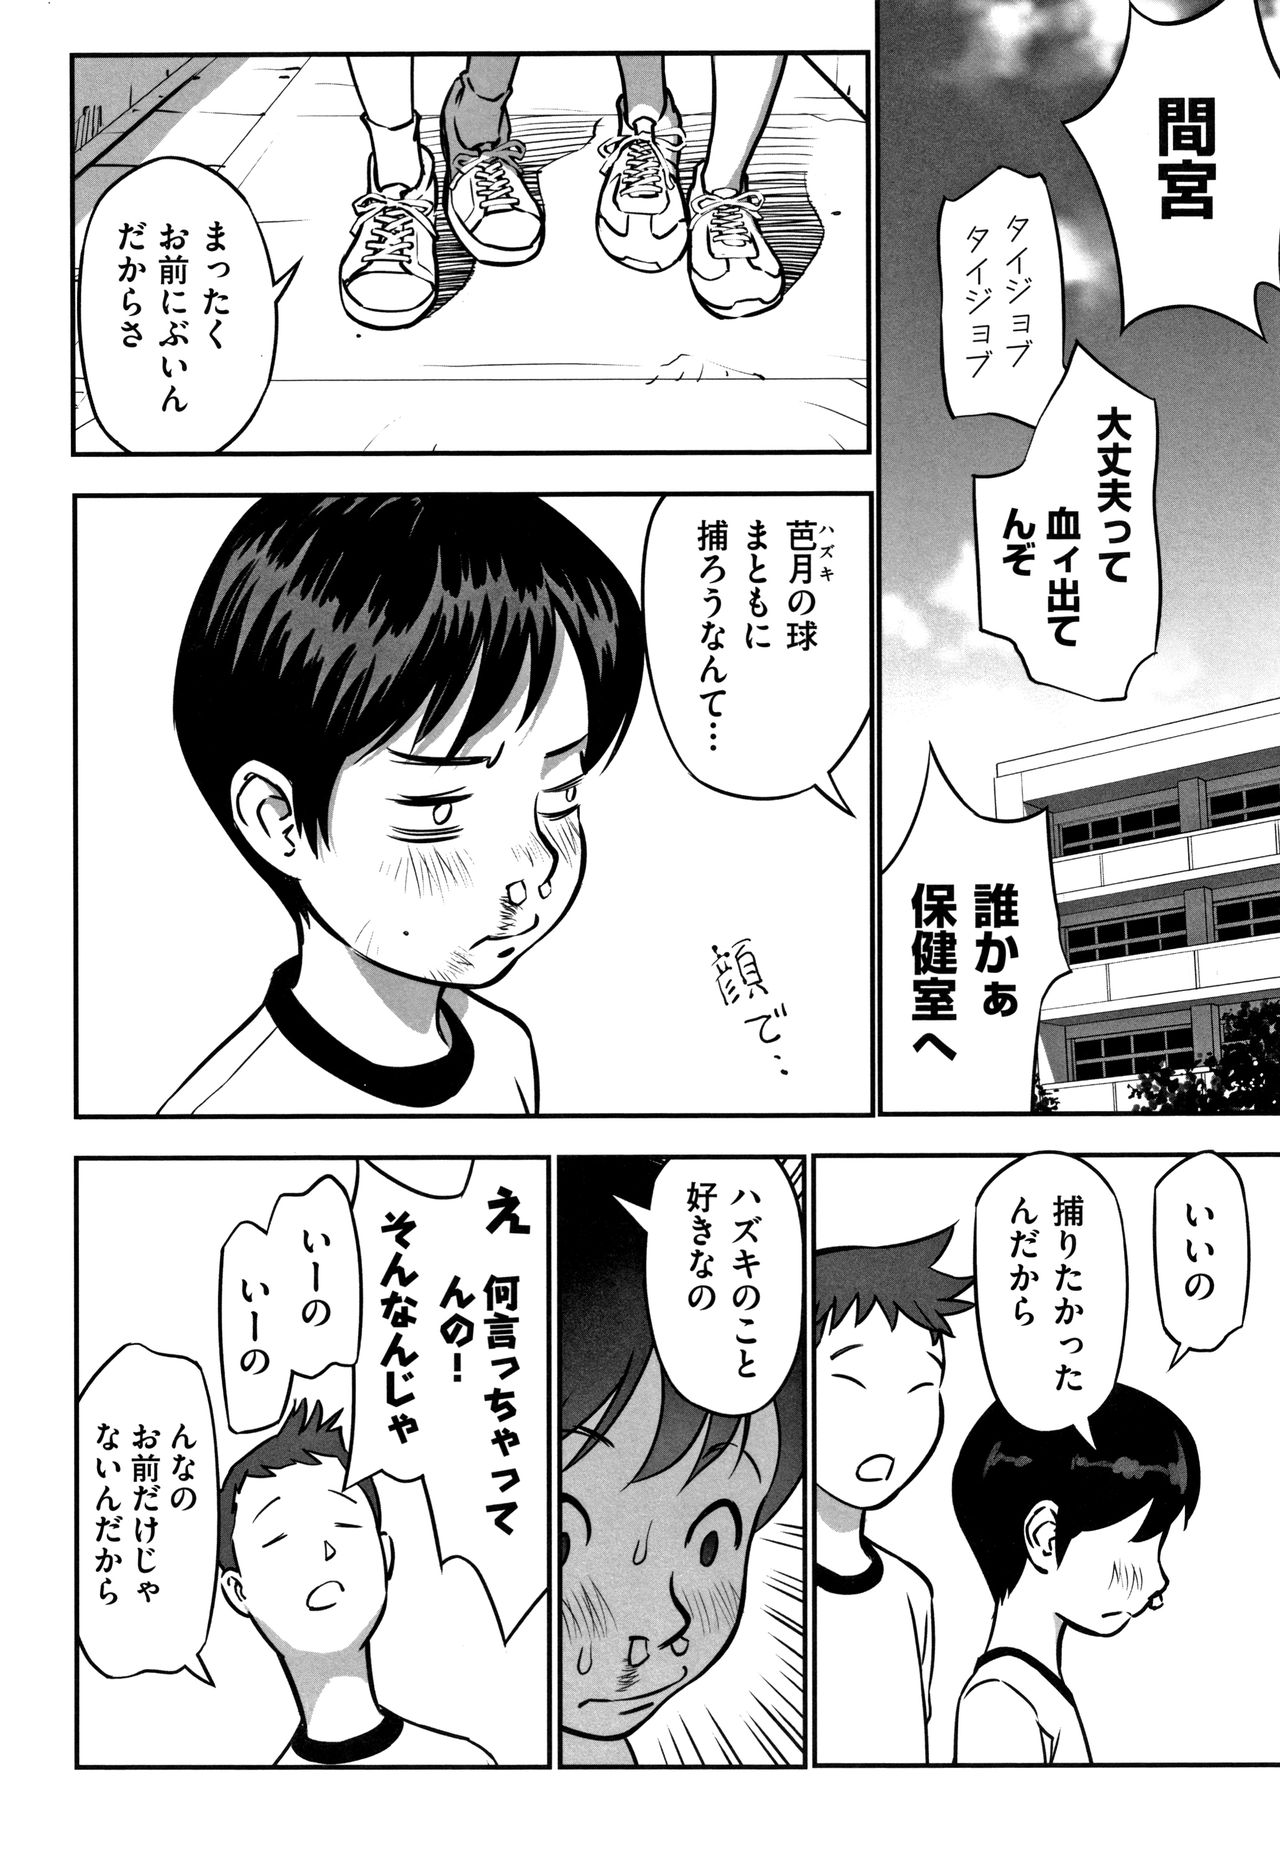 [Anthology] Shoujo Kumikyoku 13 page 49 full